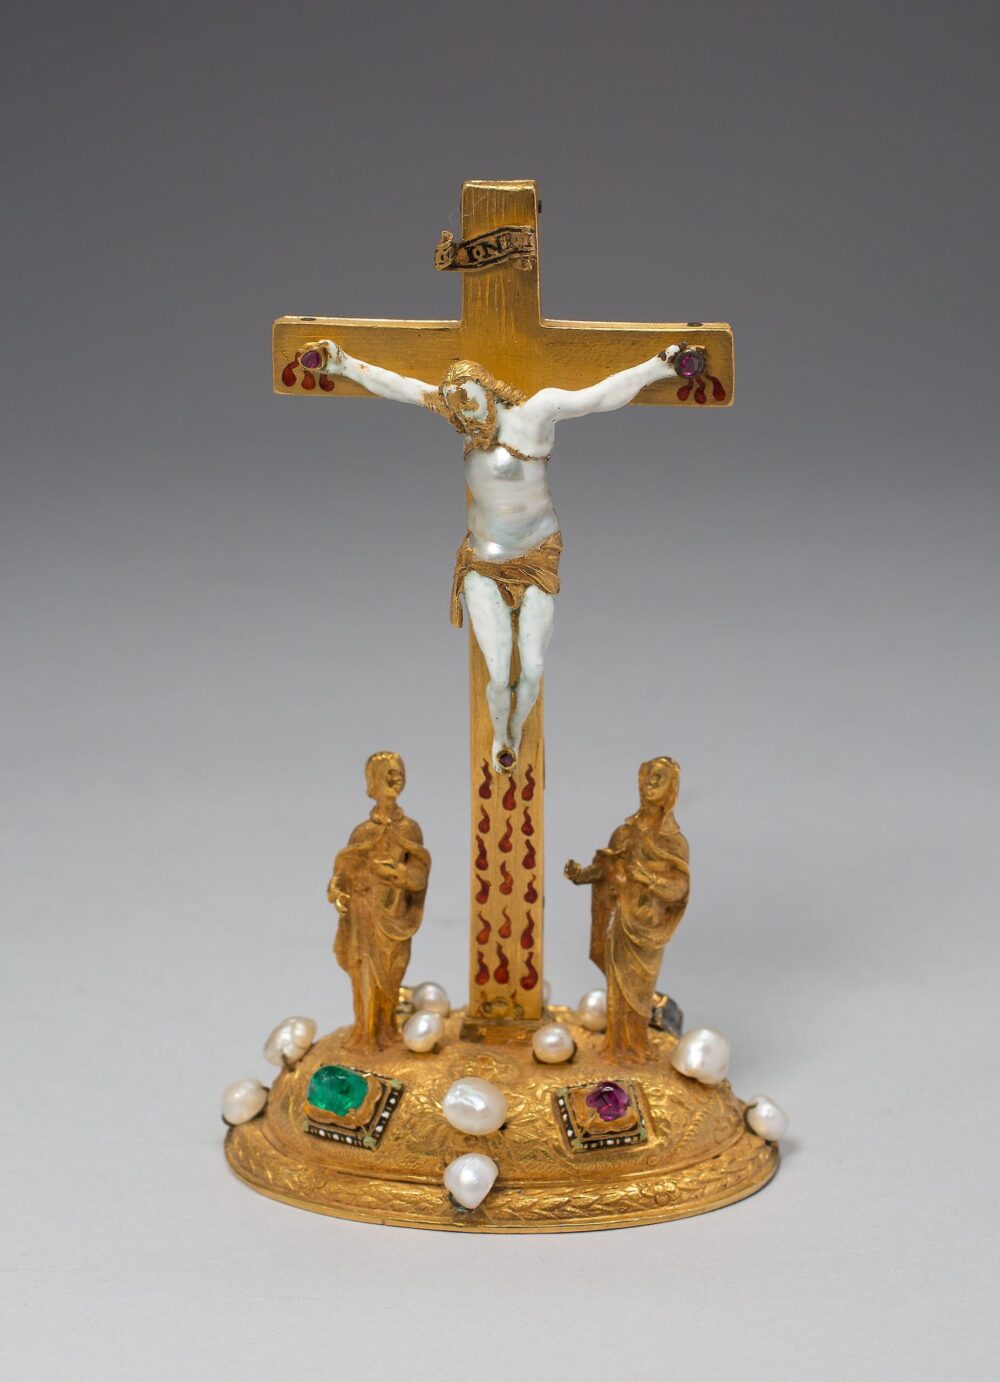 真珠をふんだんに用いた十字架上のキリスト像